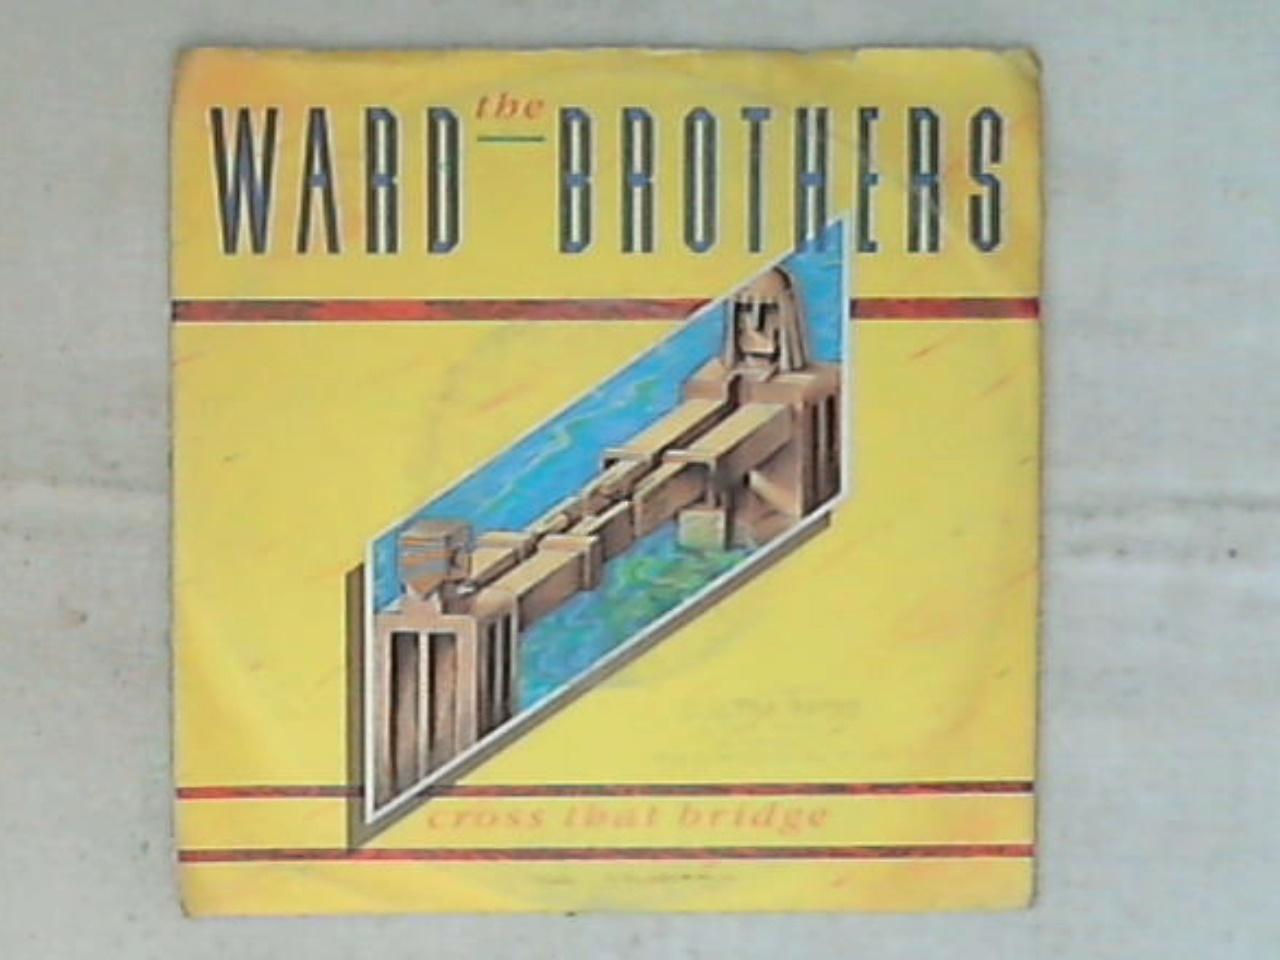 46868 45 giri - 7\' - The Ward Brothers - Cross That Bridge